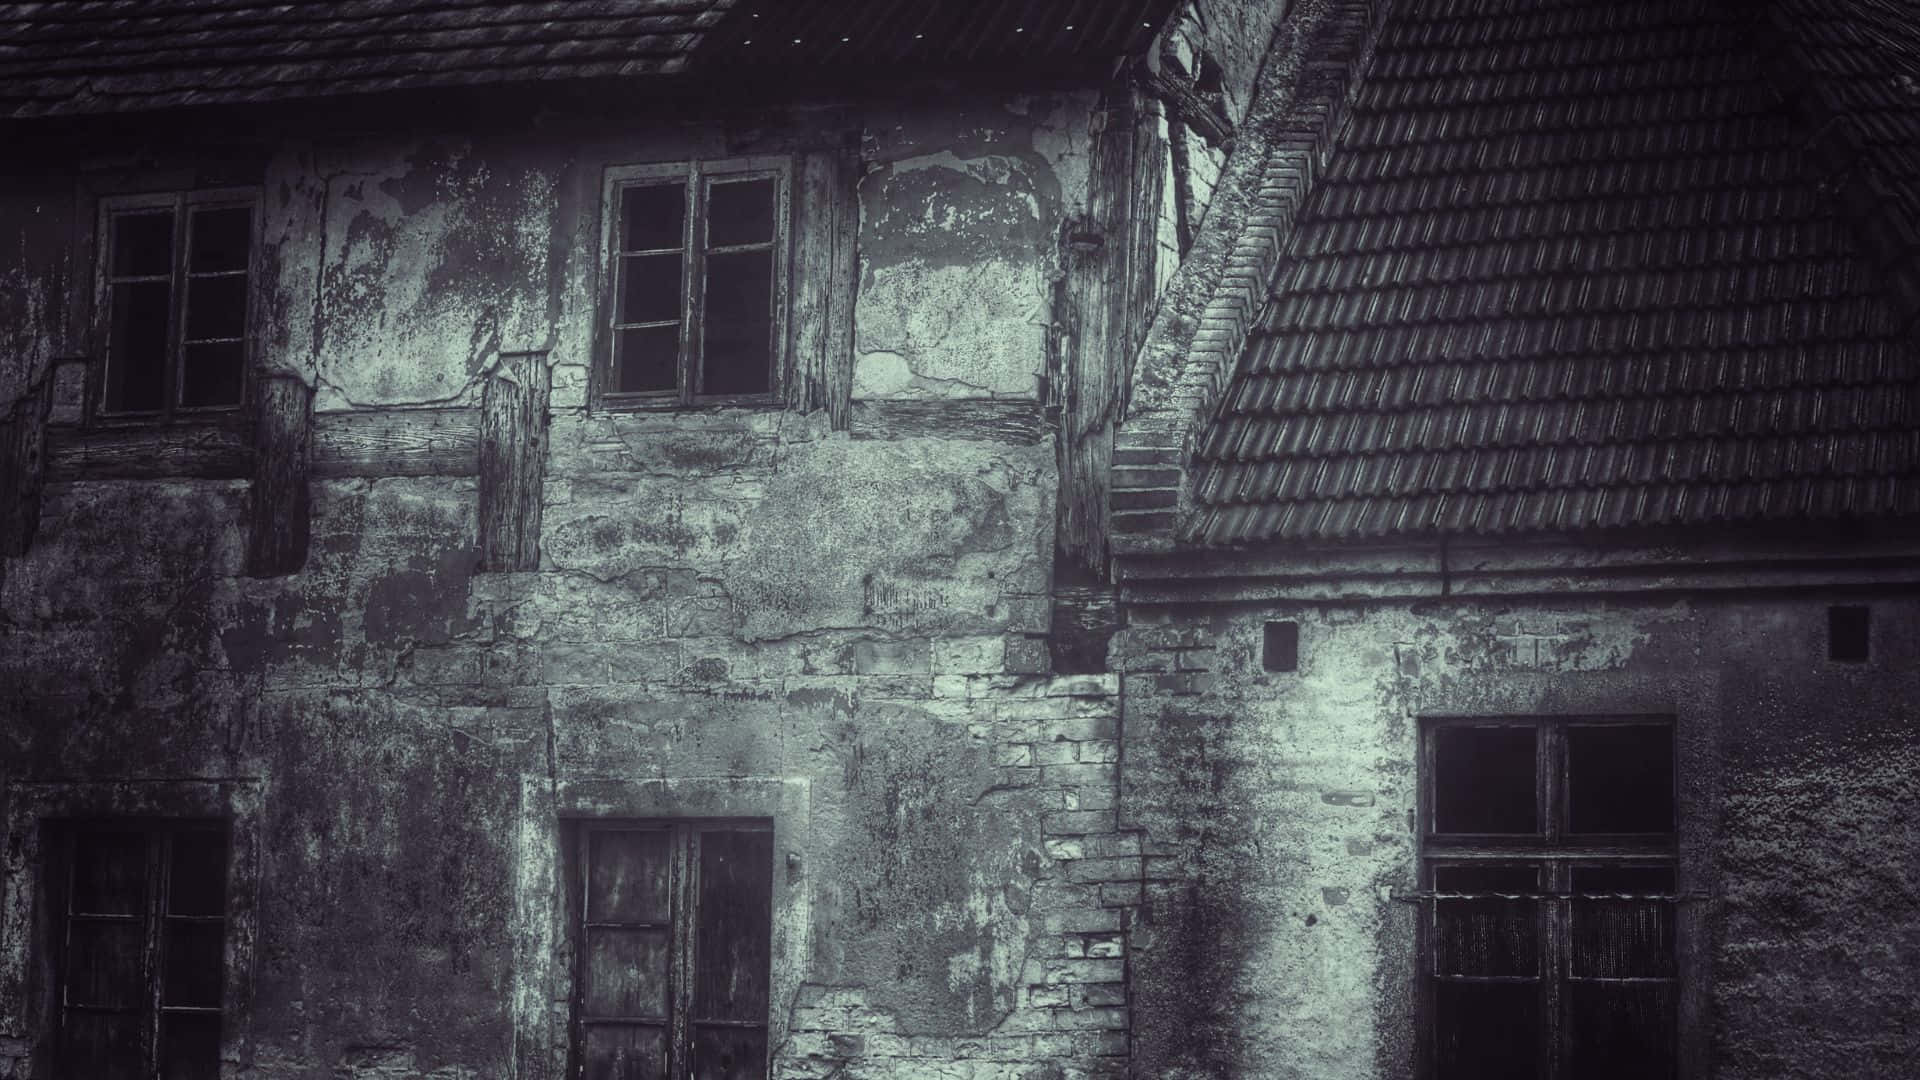 Gloomy Abandoned House Horror Aesthetic.jpg Wallpaper